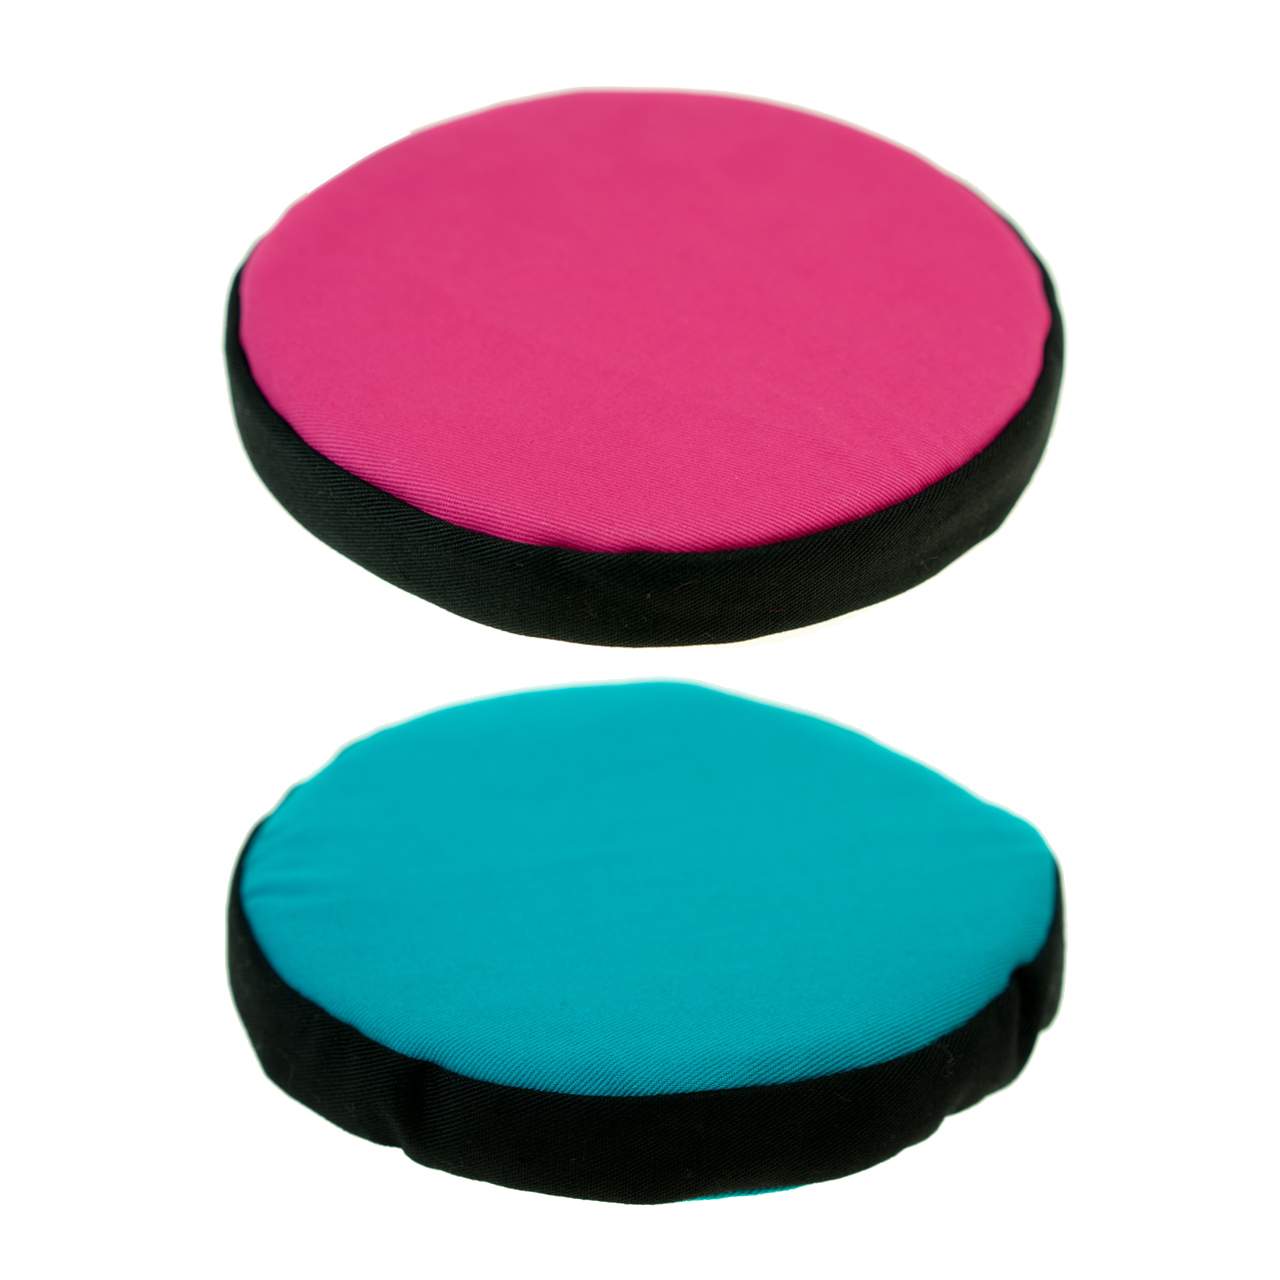 Übersicht rundes Kissen für Klangschale pink oder türkis mit schwarzer Borte Durchmesser 15 cm